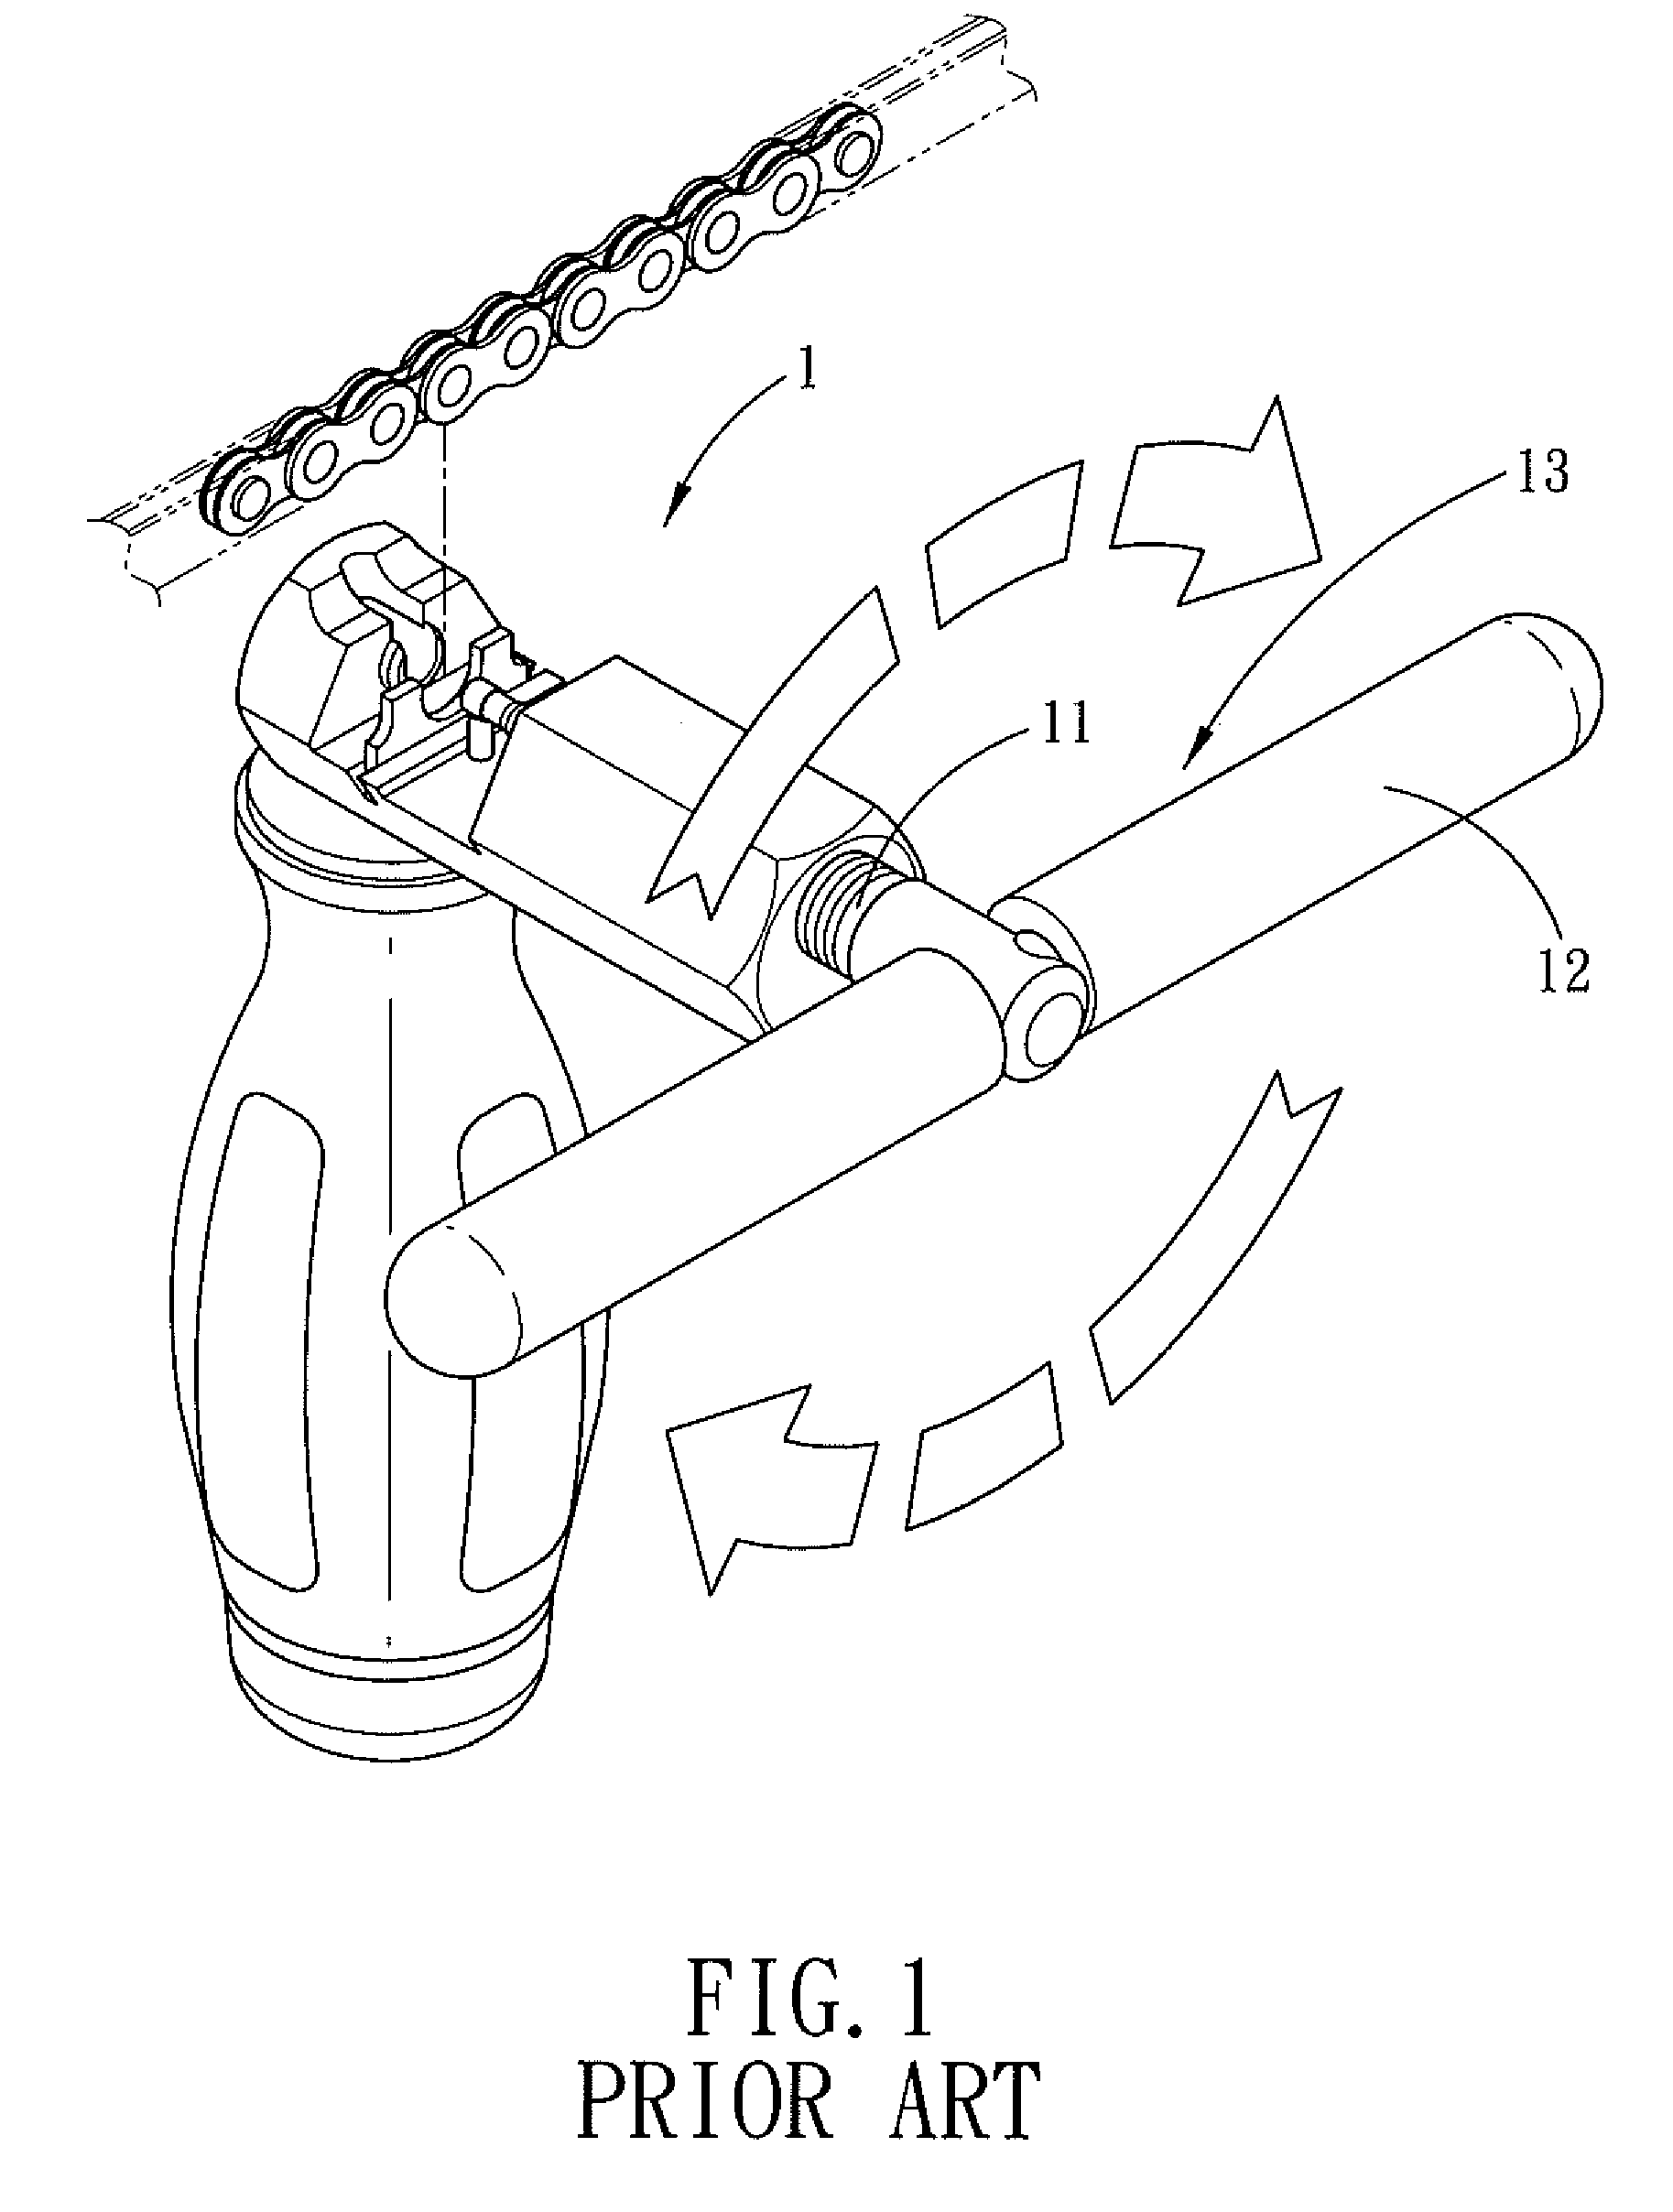 Ratchet arrangement for a chain splitter